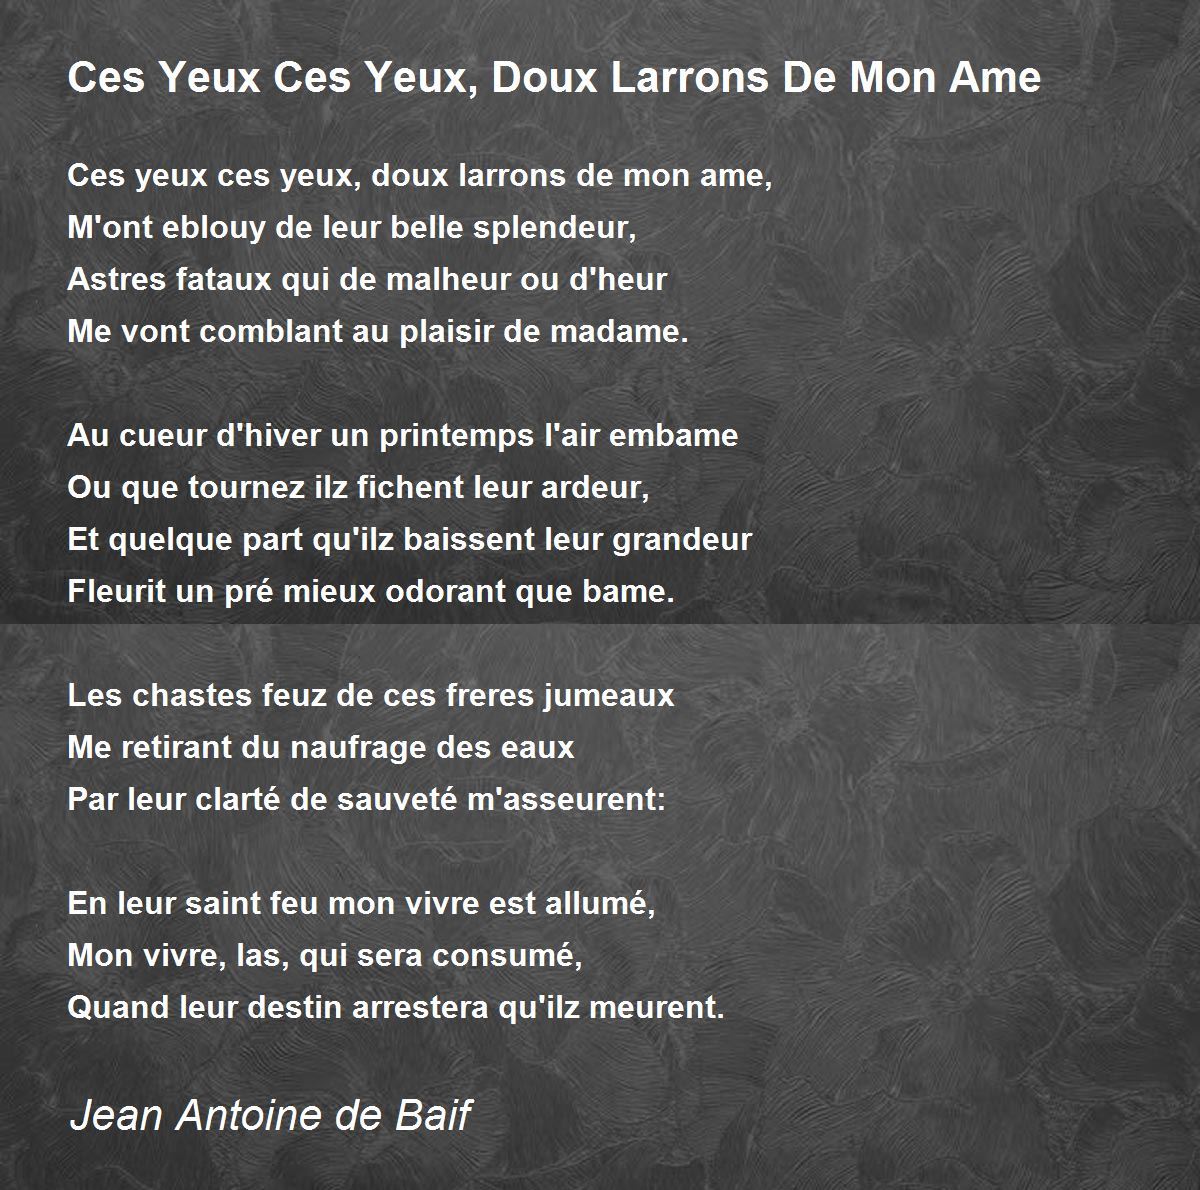 Ces Yeux Ces Yeux, Doux Larrons De Mon Ame by Jean Antoine de Baif ...